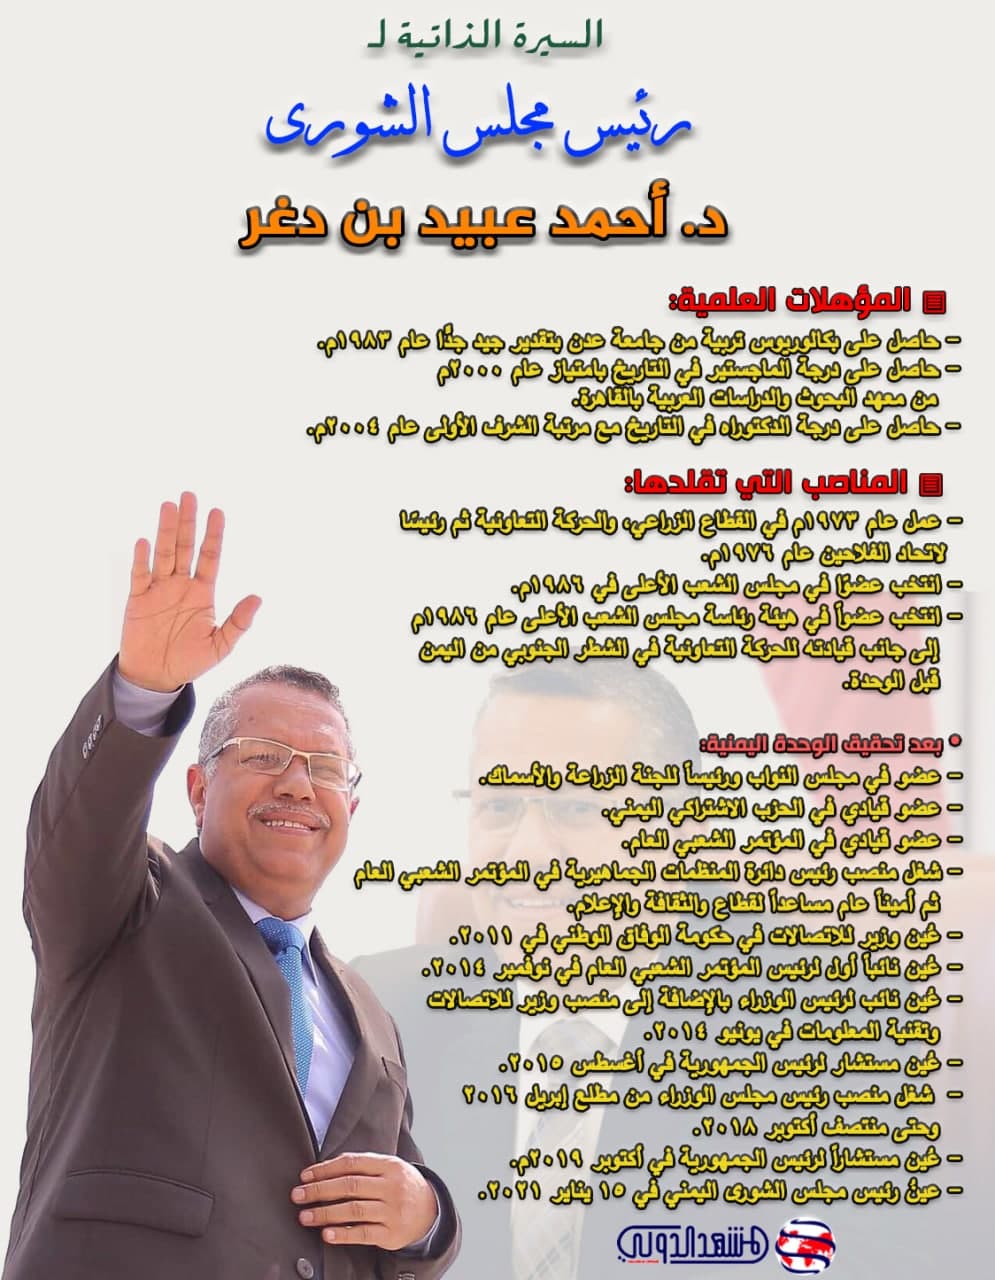 السيرة الذاتية لرئيس مجلس الشورى د. أحمد عبيد بن دغر